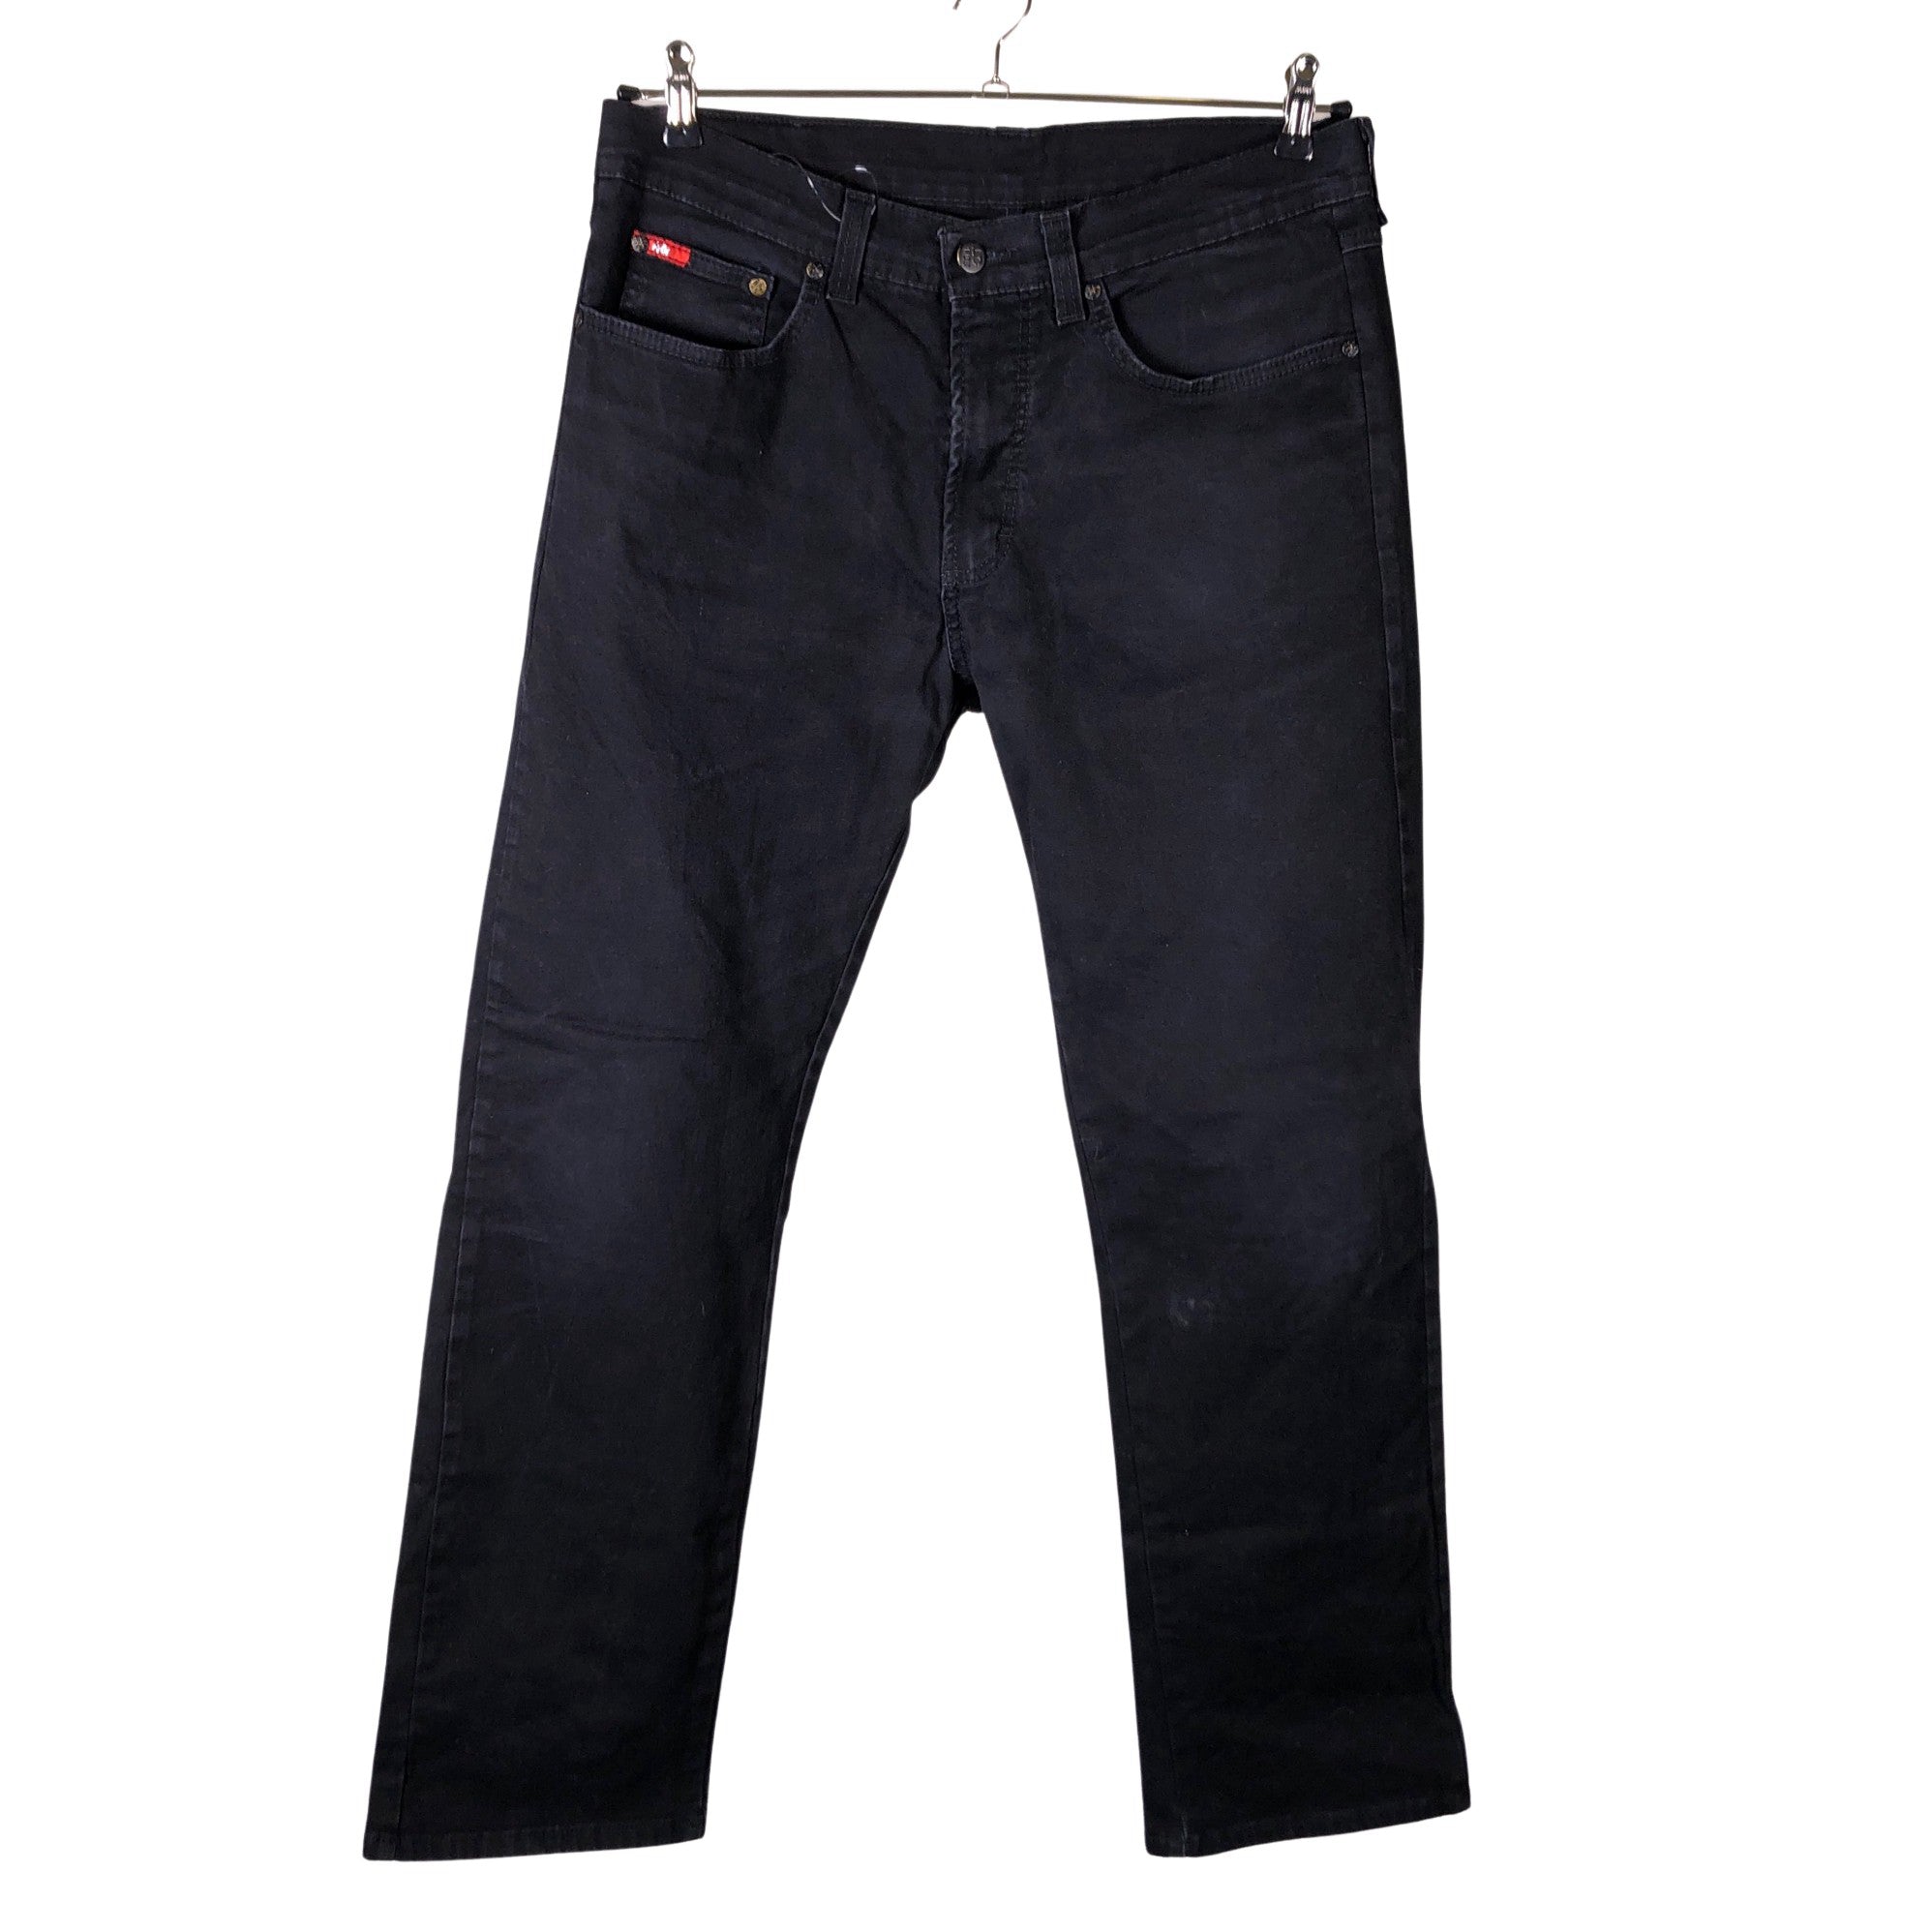 Lee Cooper Jeans Men's 34x32 Slim Fit Olive Green Ombré Wash | eBay